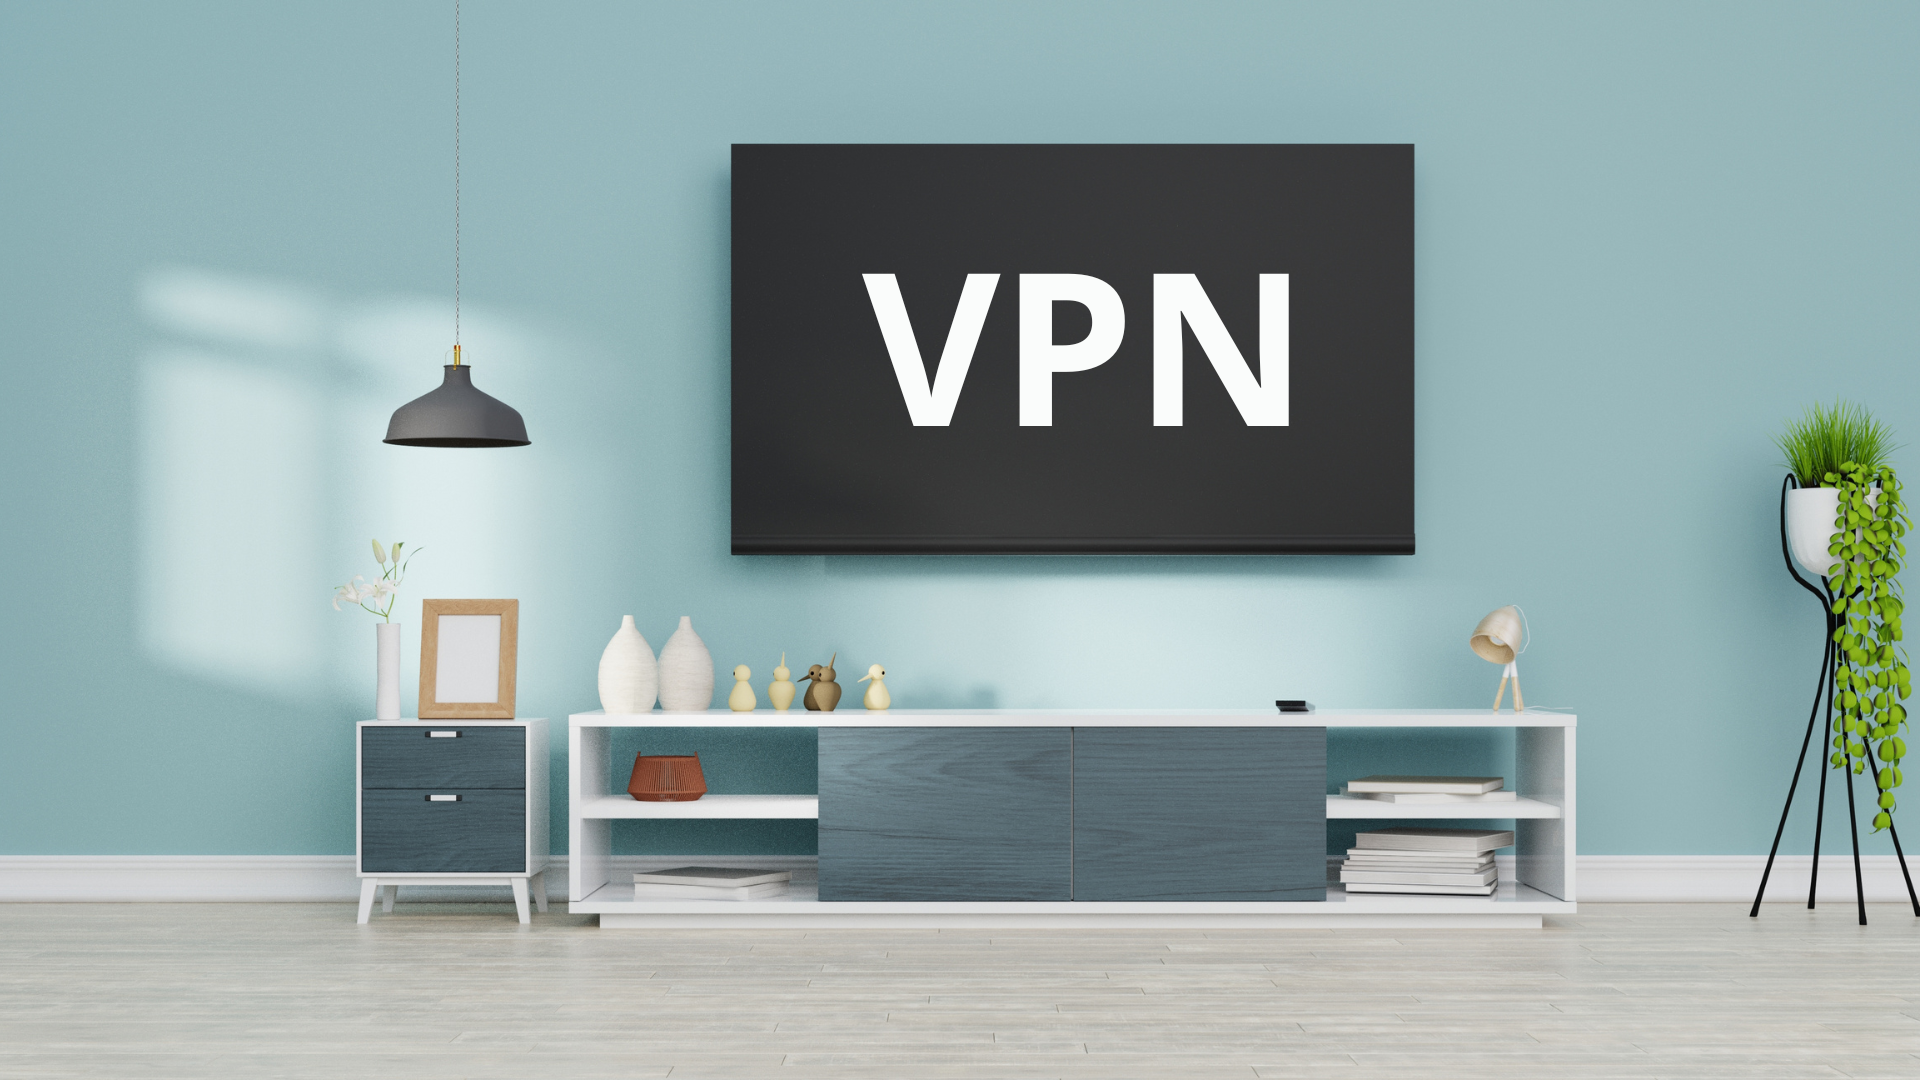 Cómo configurar y usar una VPN en Smart TV?